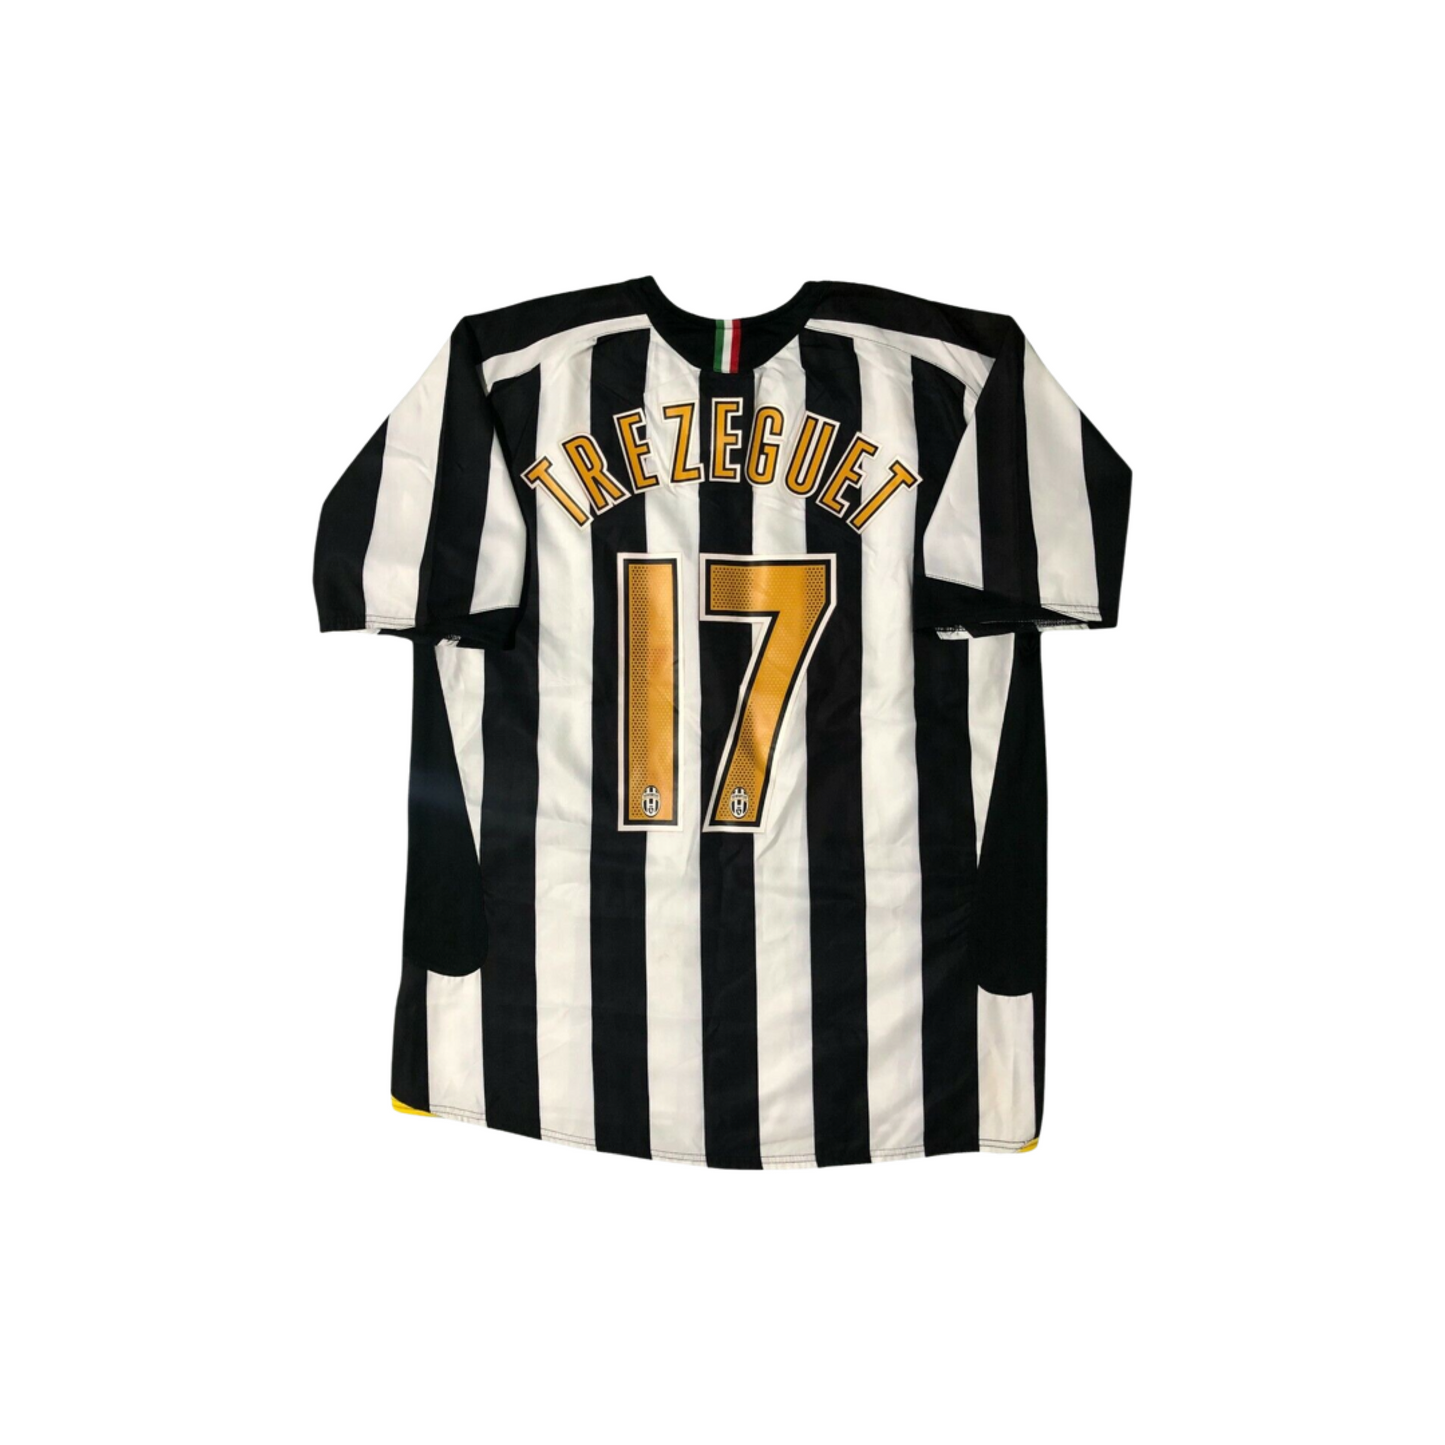 Juventus Home Jersey 2005-06